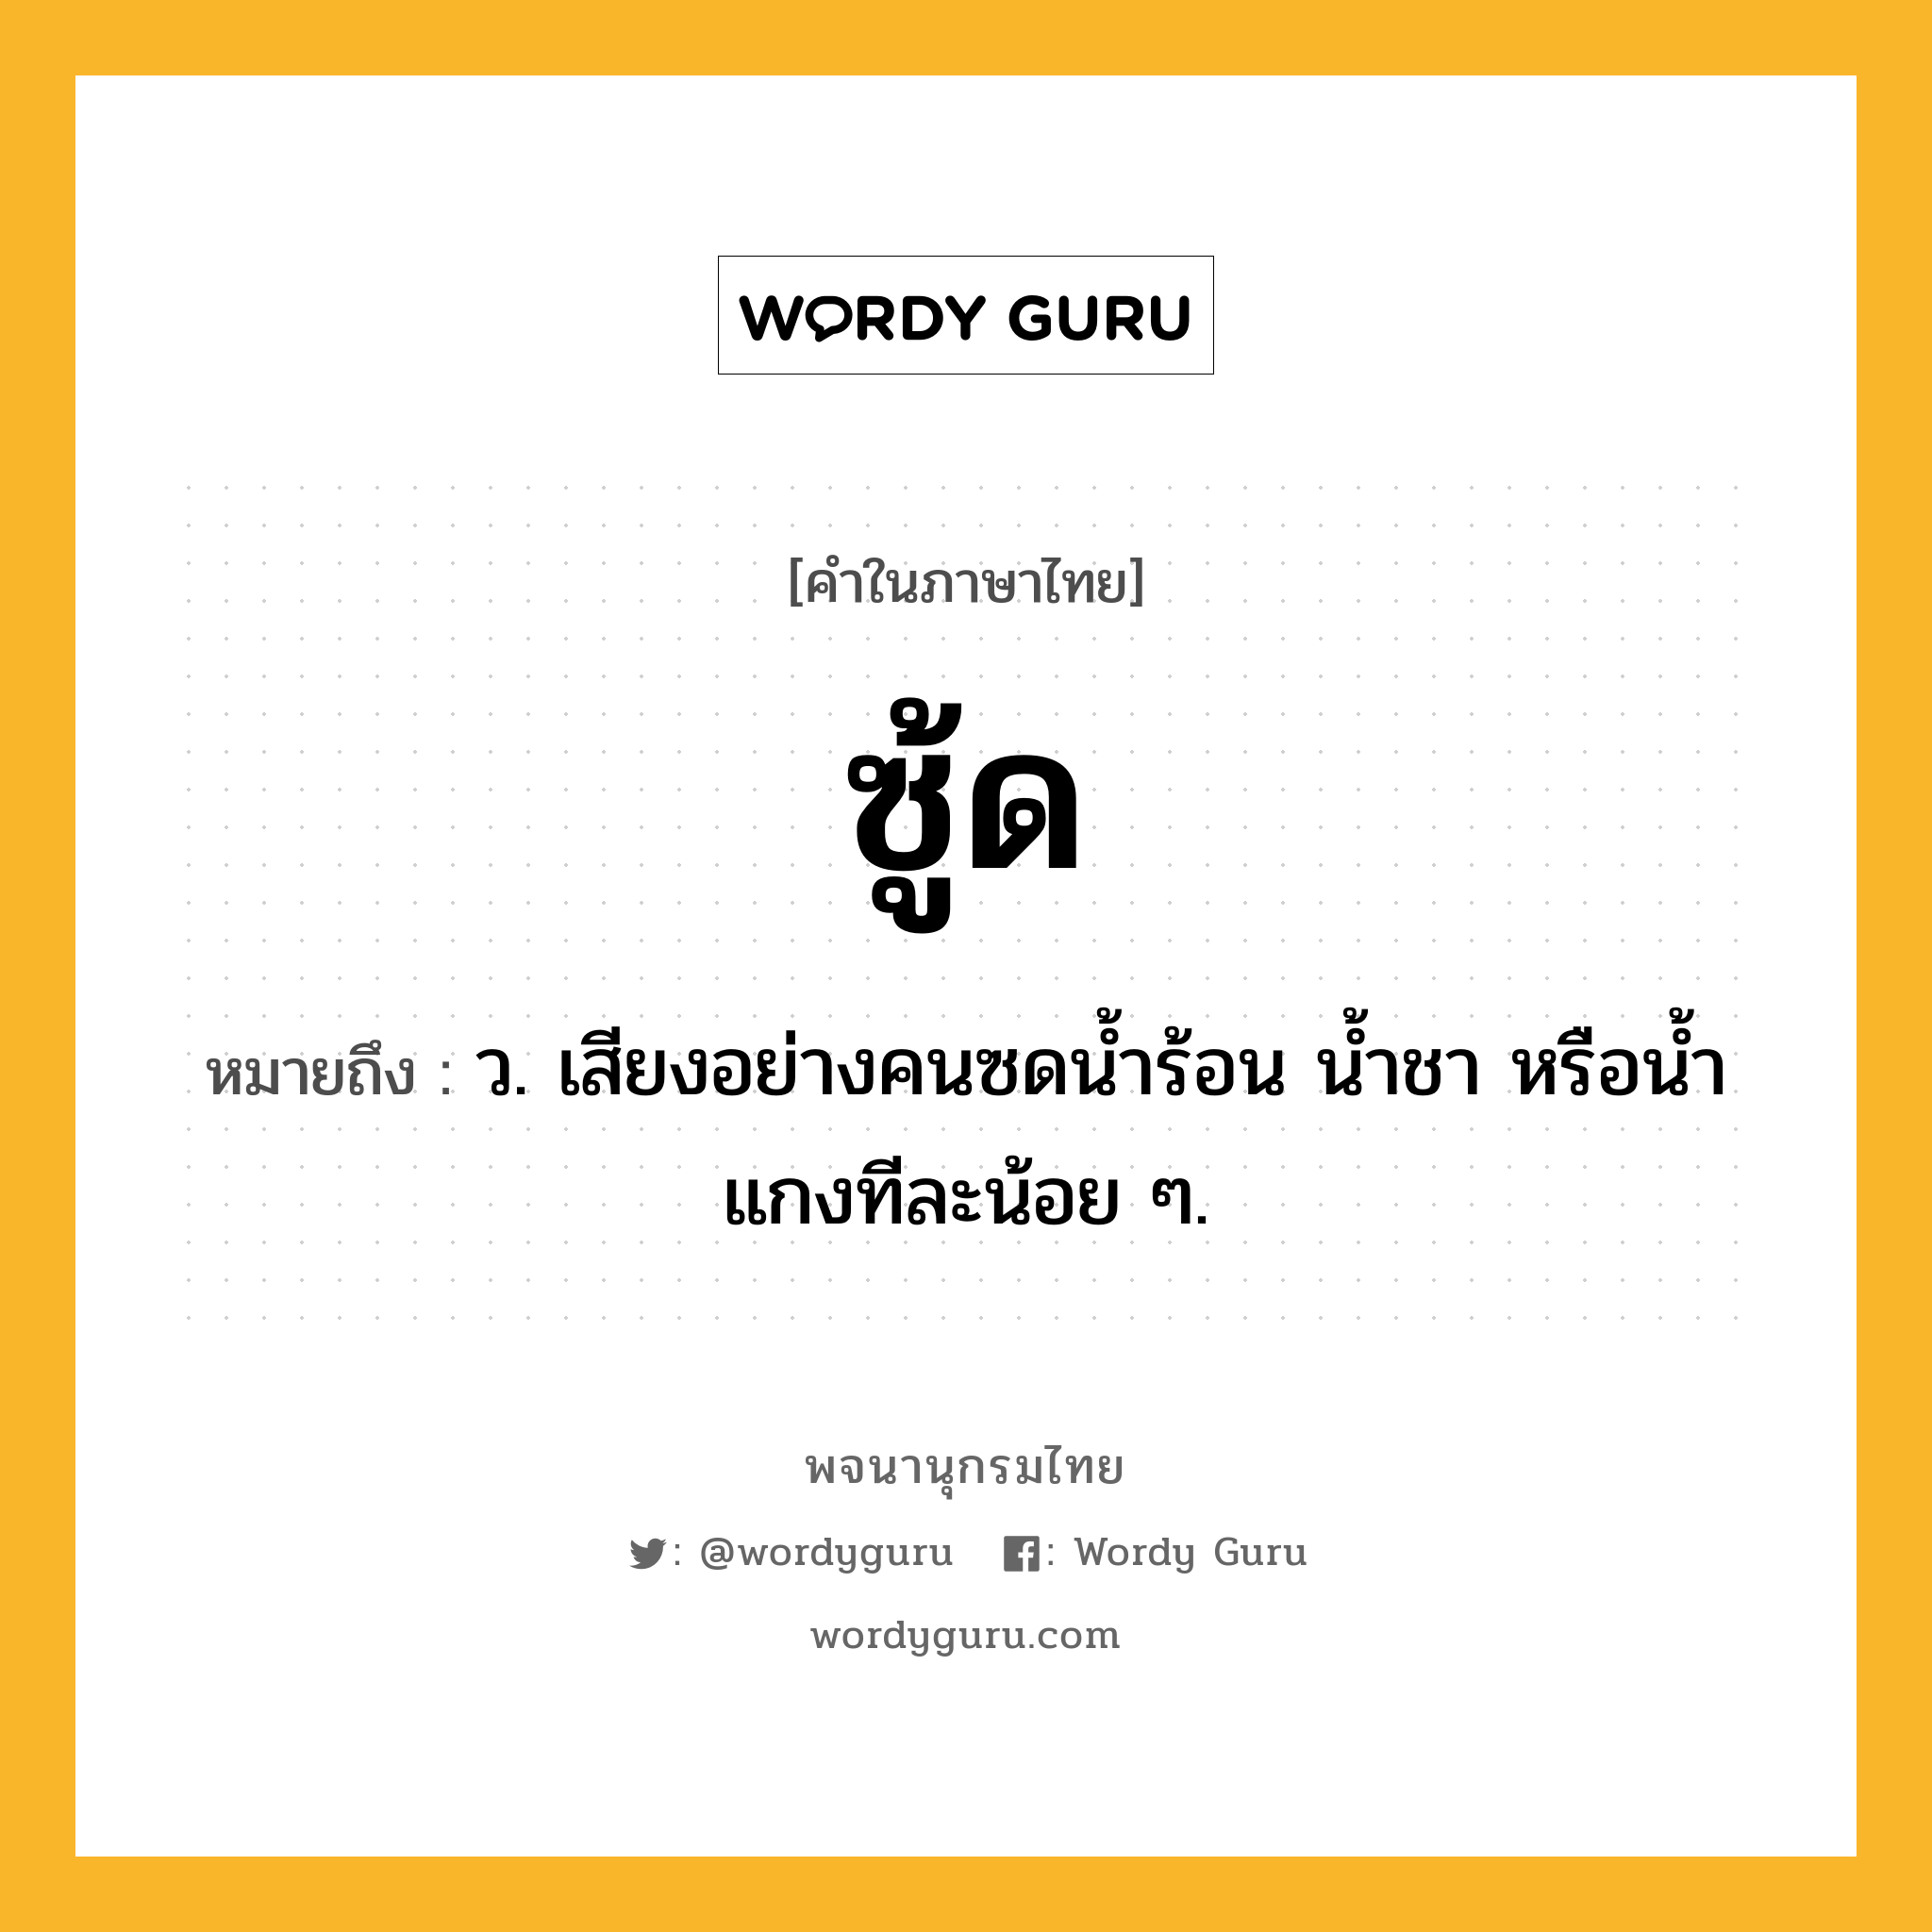 ซู้ด ความหมาย หมายถึงอะไร?, คำในภาษาไทย ซู้ด หมายถึง ว. เสียงอย่างคนซดนํ้าร้อน นํ้าชา หรือนํ้าแกงทีละน้อย ๆ.